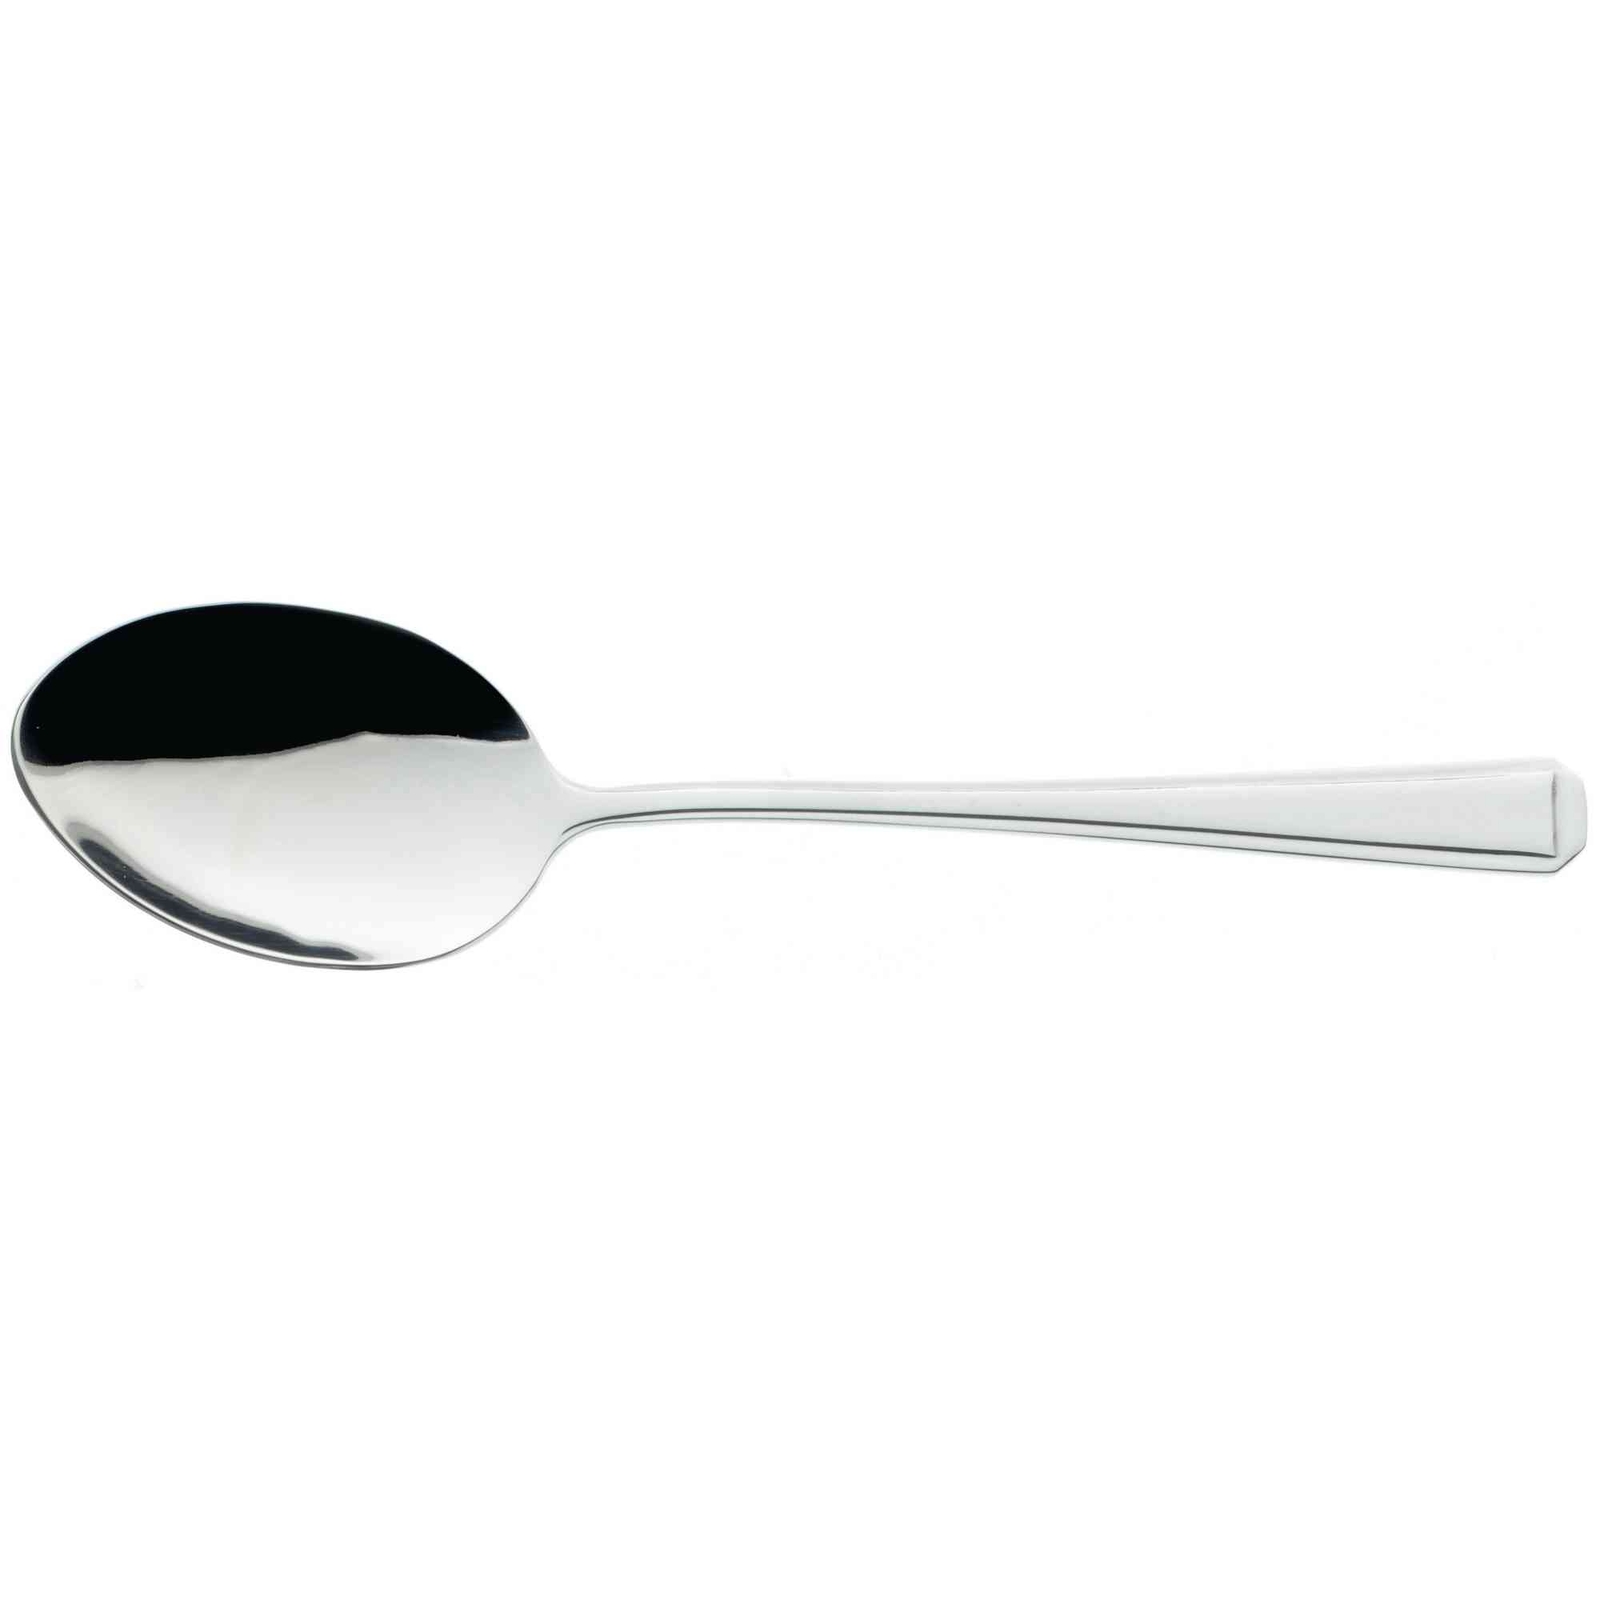 Harley Spoon - Adult Spoon